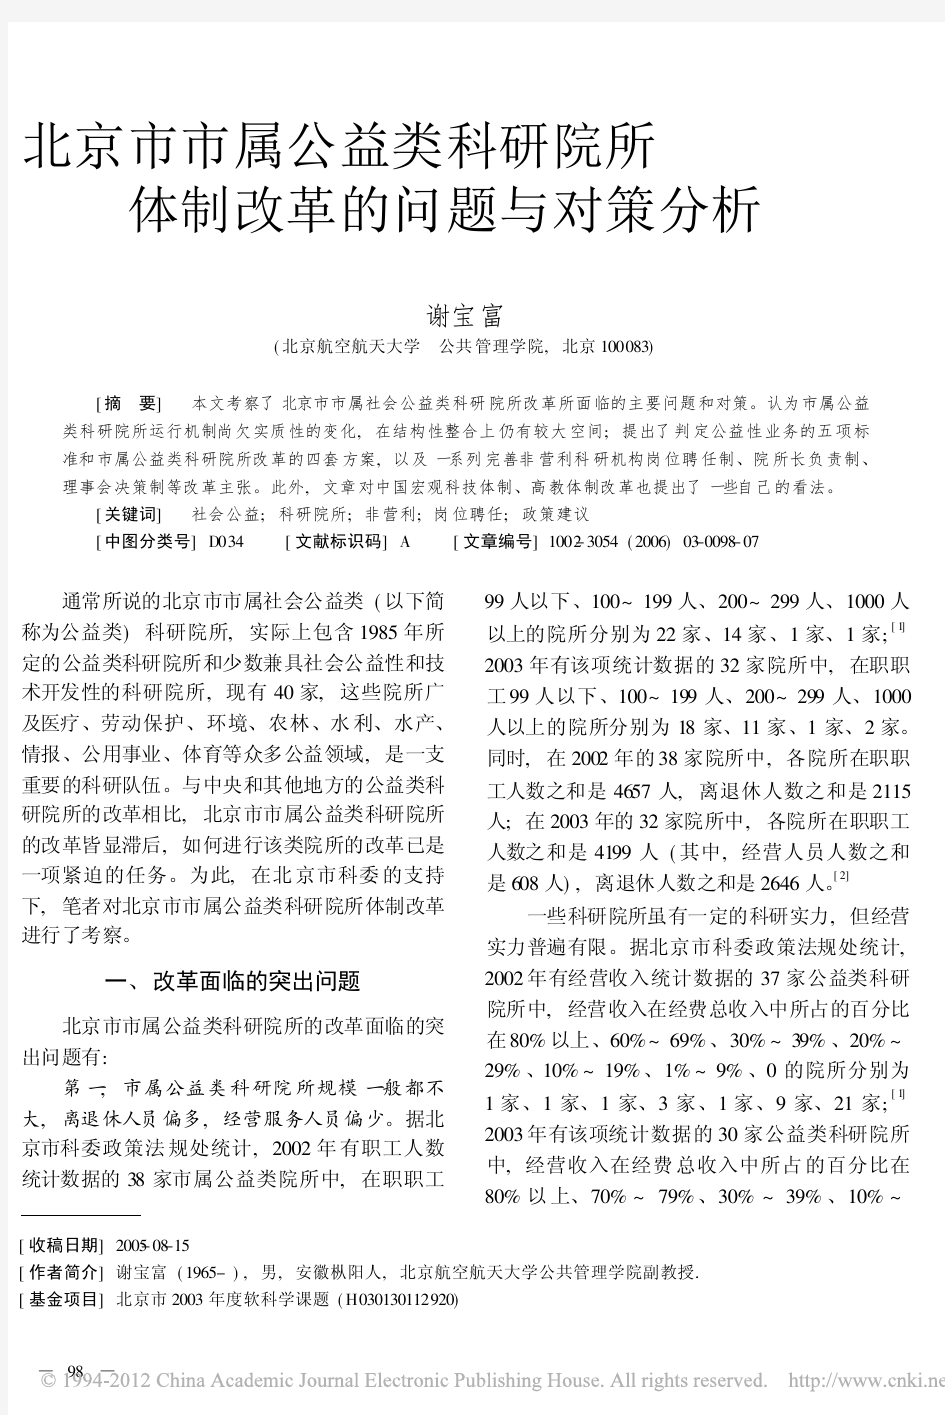 北京市市属公益类科研院所体制改革的问题与对策分析_谢宝富